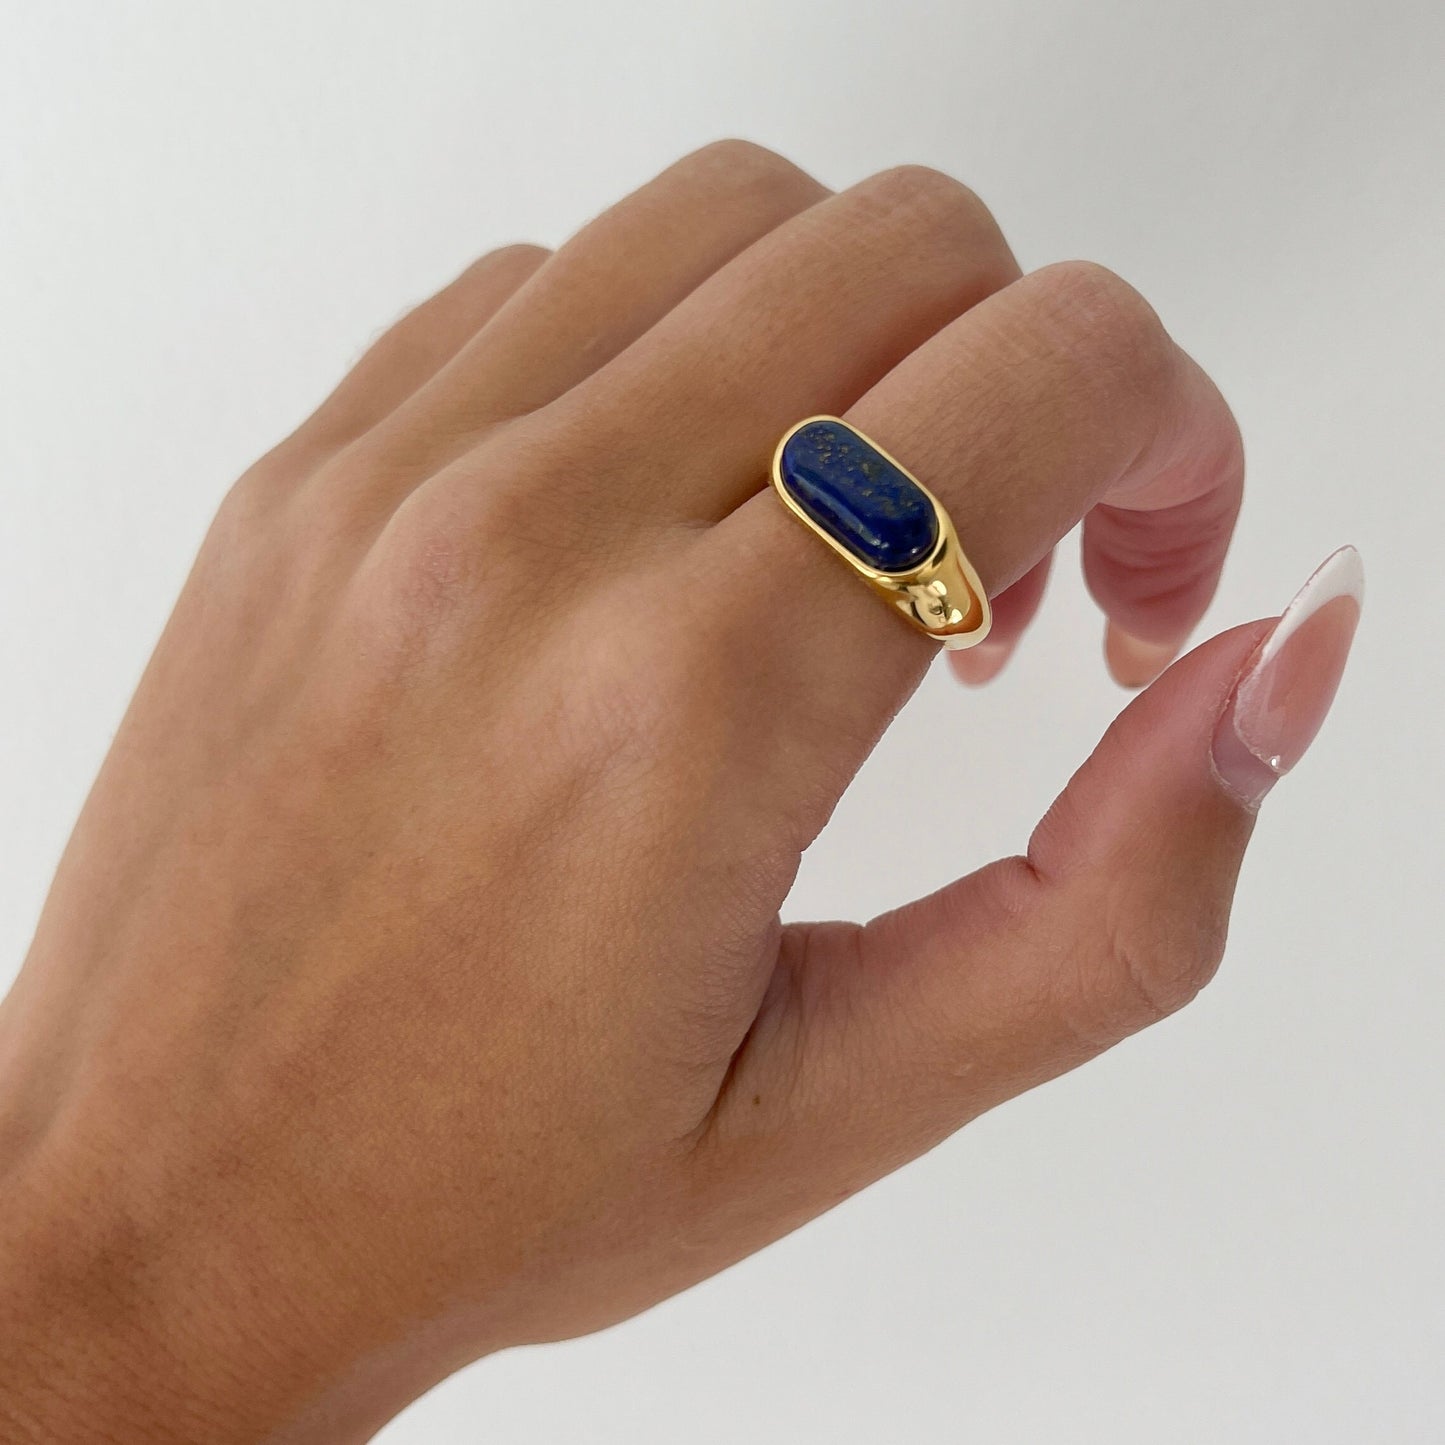 Gemstone ring, thin chunky gold ring, gold filled ring, natural gemstone ring, thick gold ring agate band, quartz, minimalist irregular ring